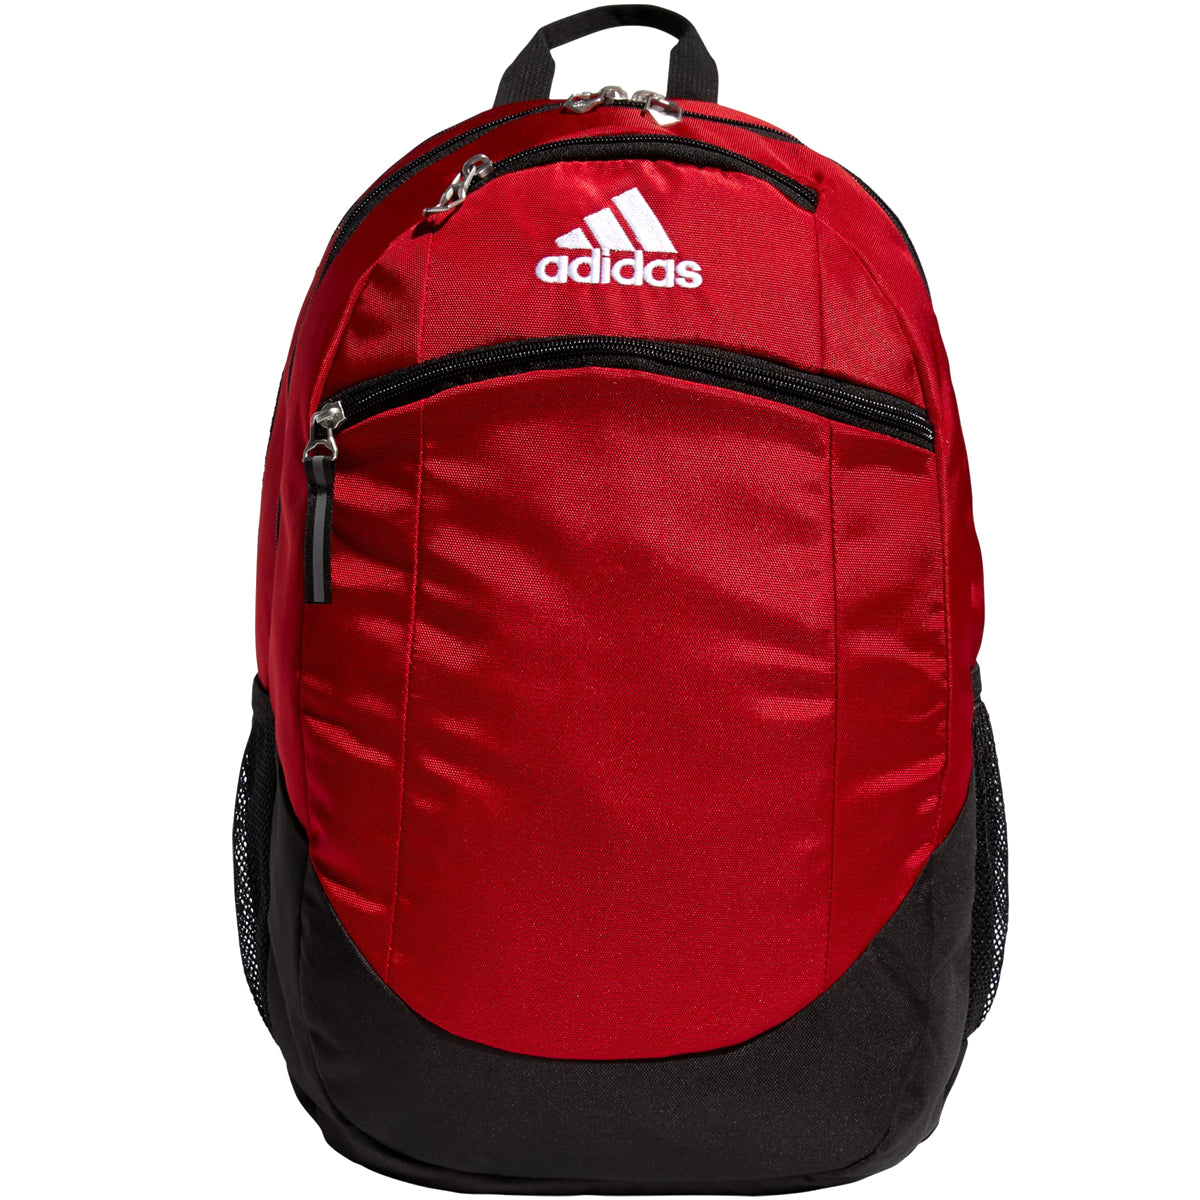 adidas Unisex-Adult 5-Star Team Backpack